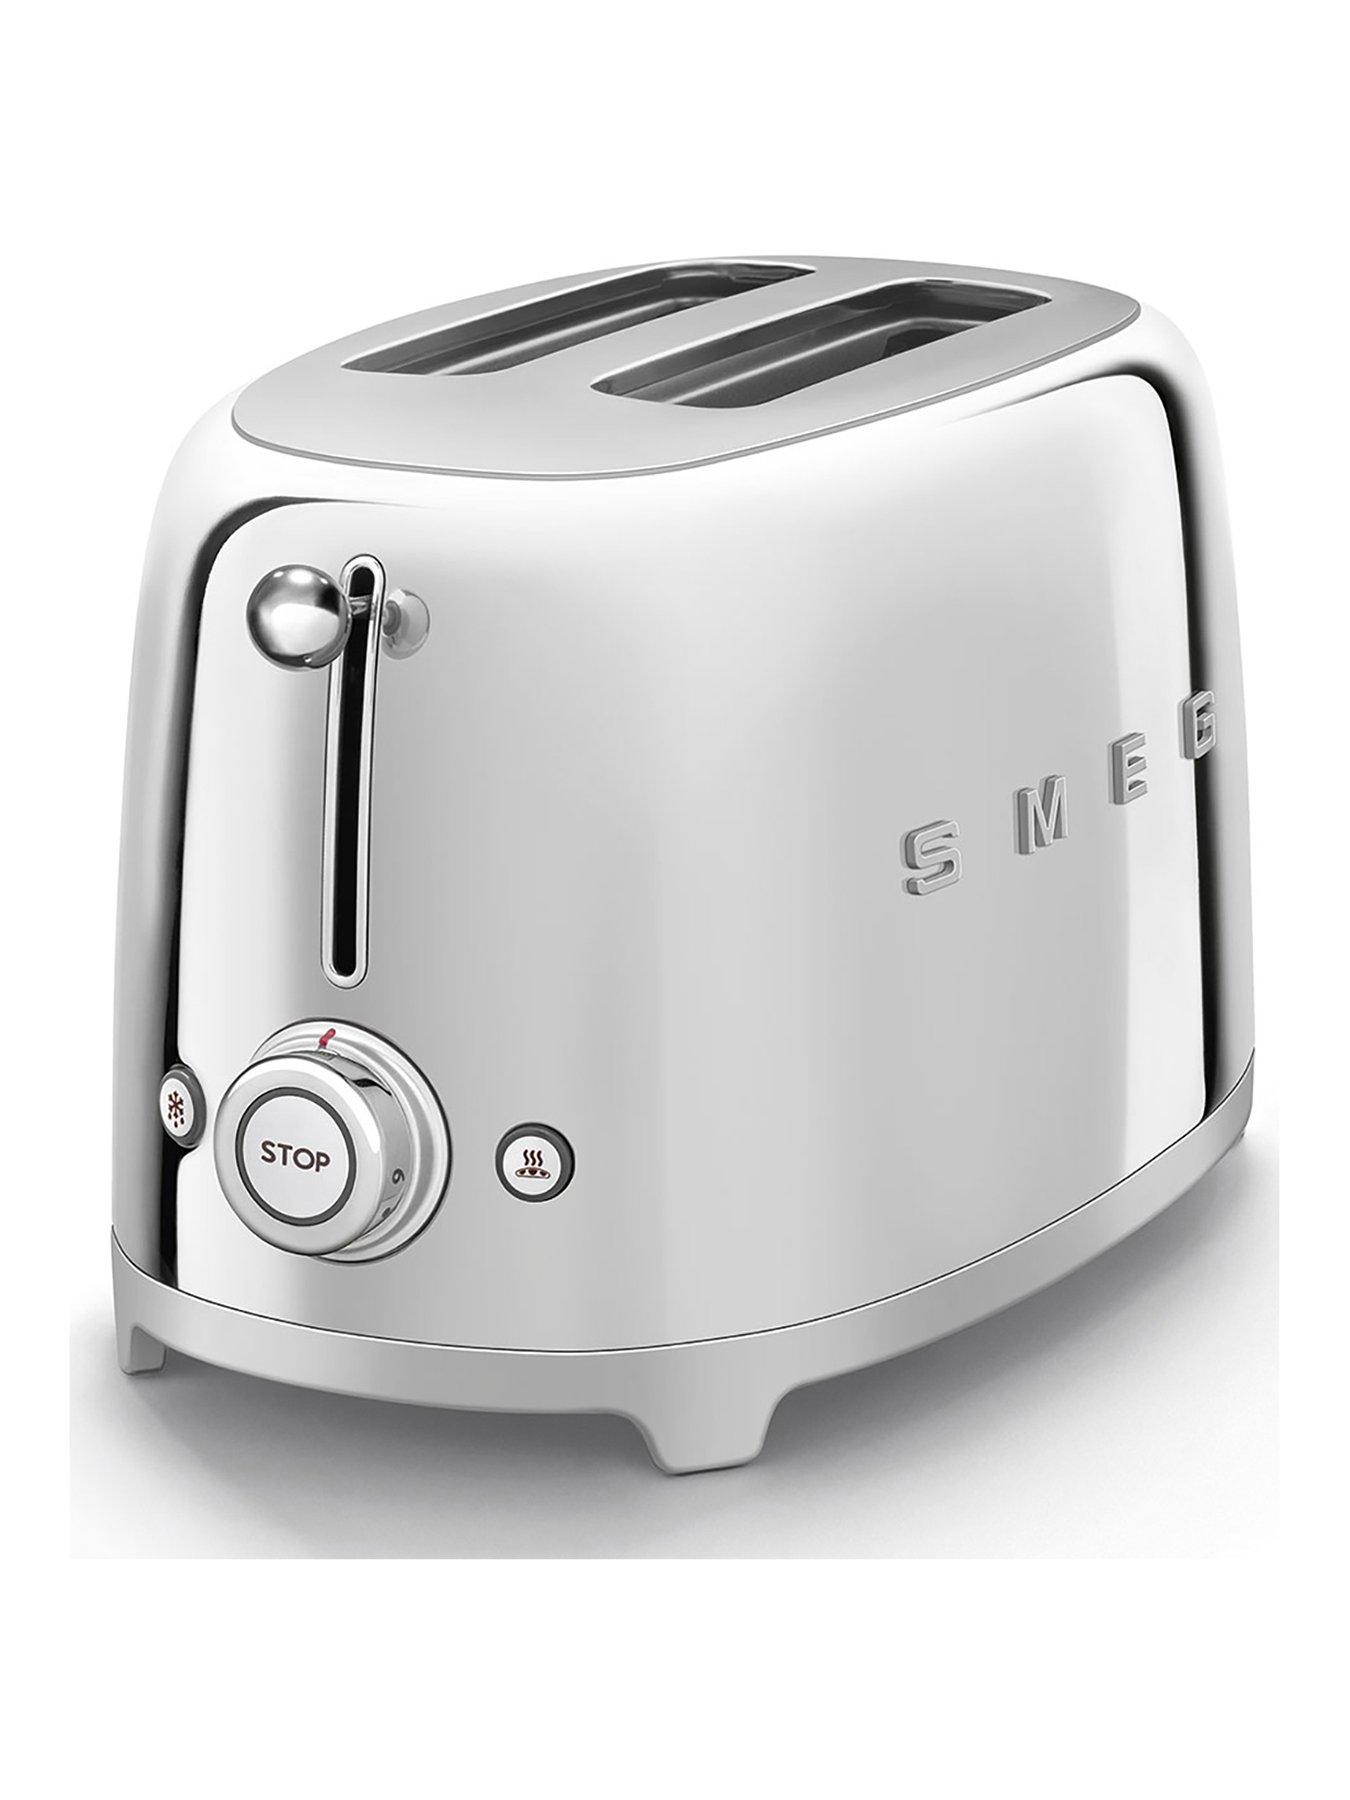 Smeg Tsf01 Retro Style 2 Slice Toaster, 950W - Stainless Steel